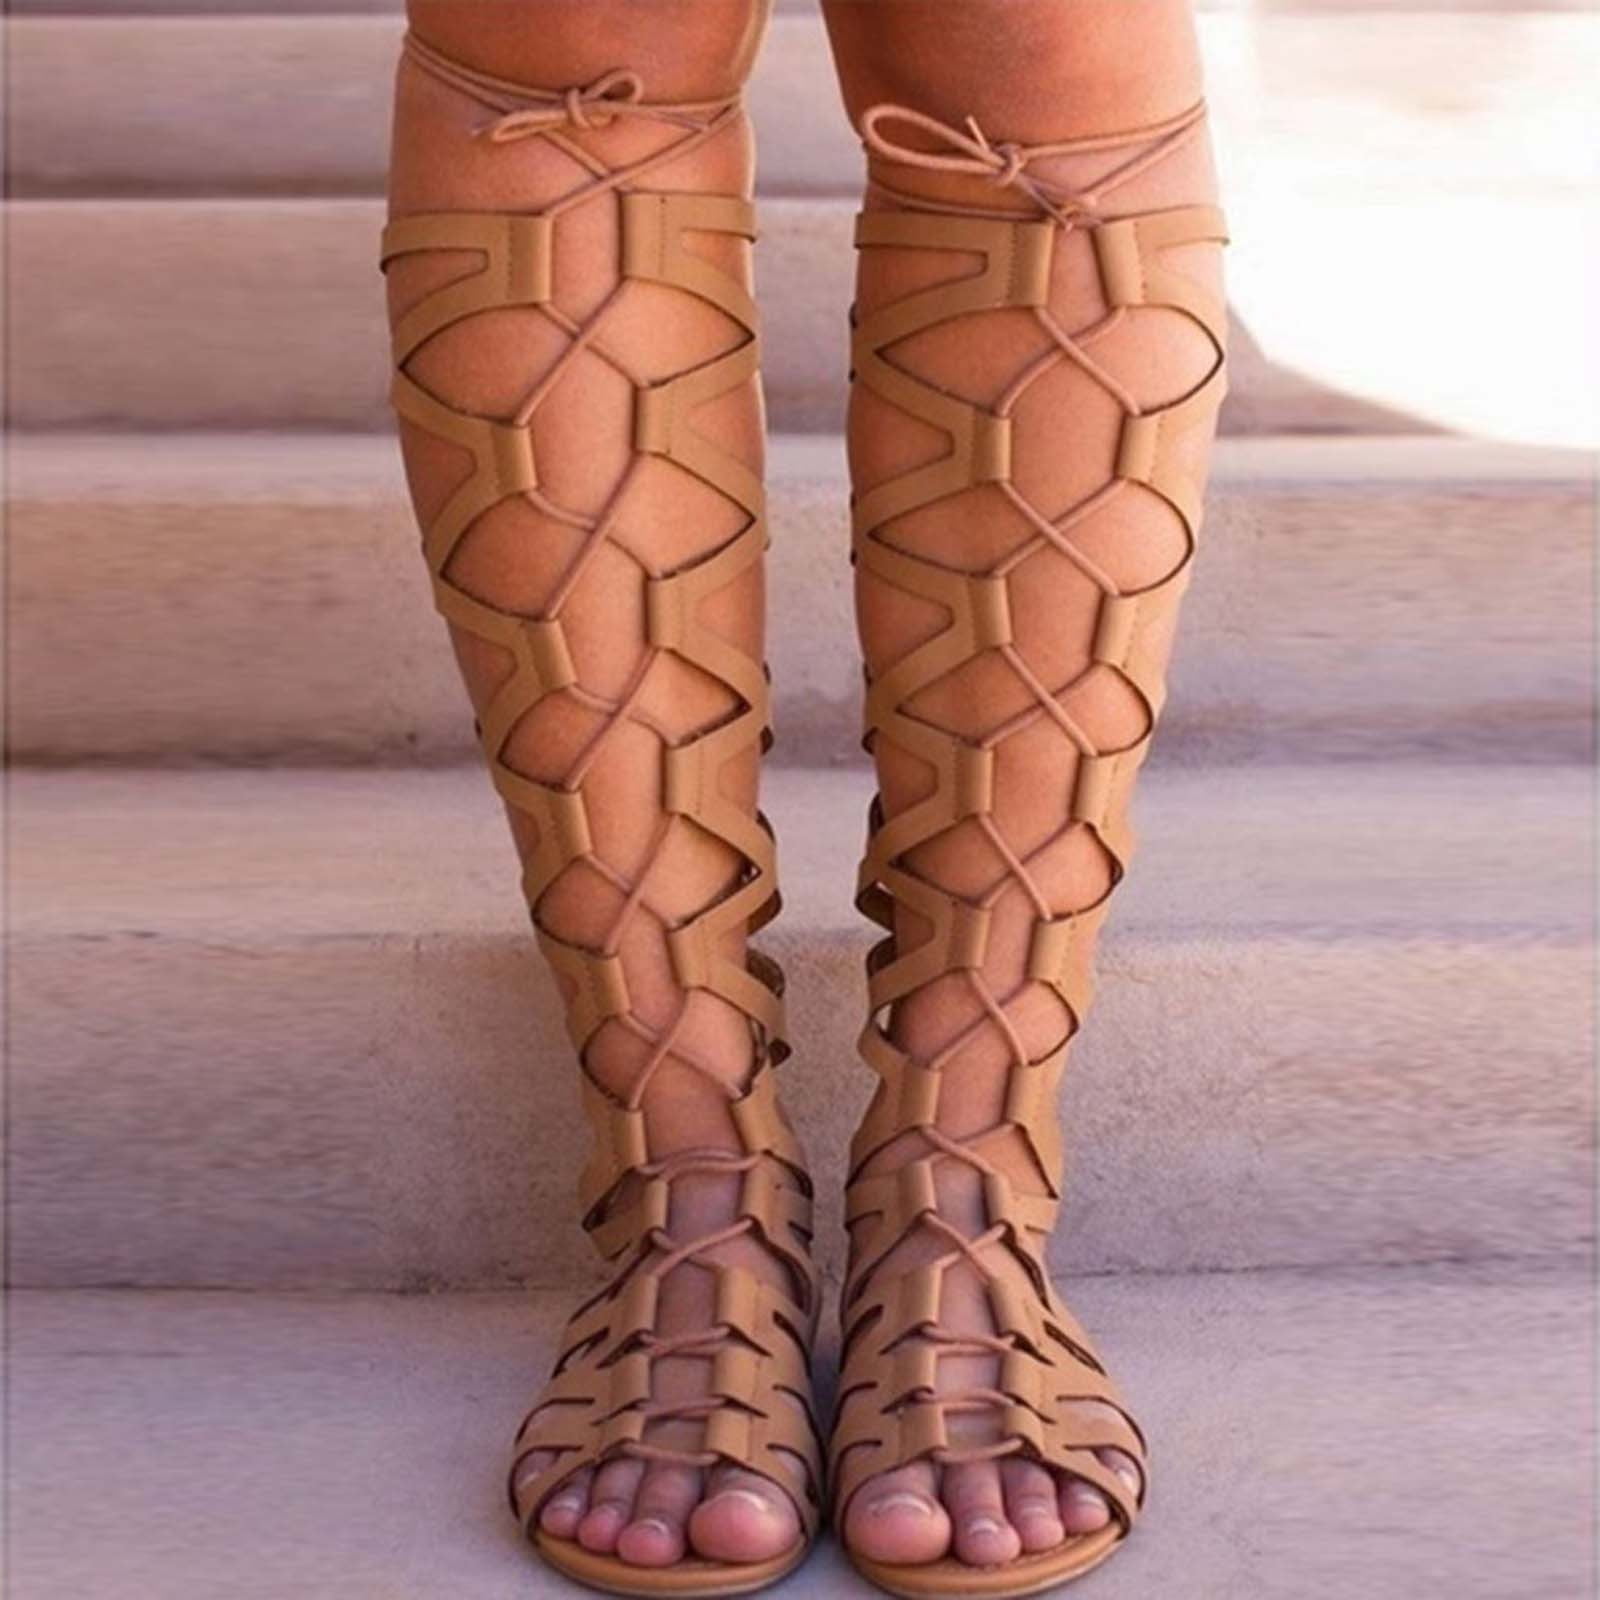 Gladiator sandals